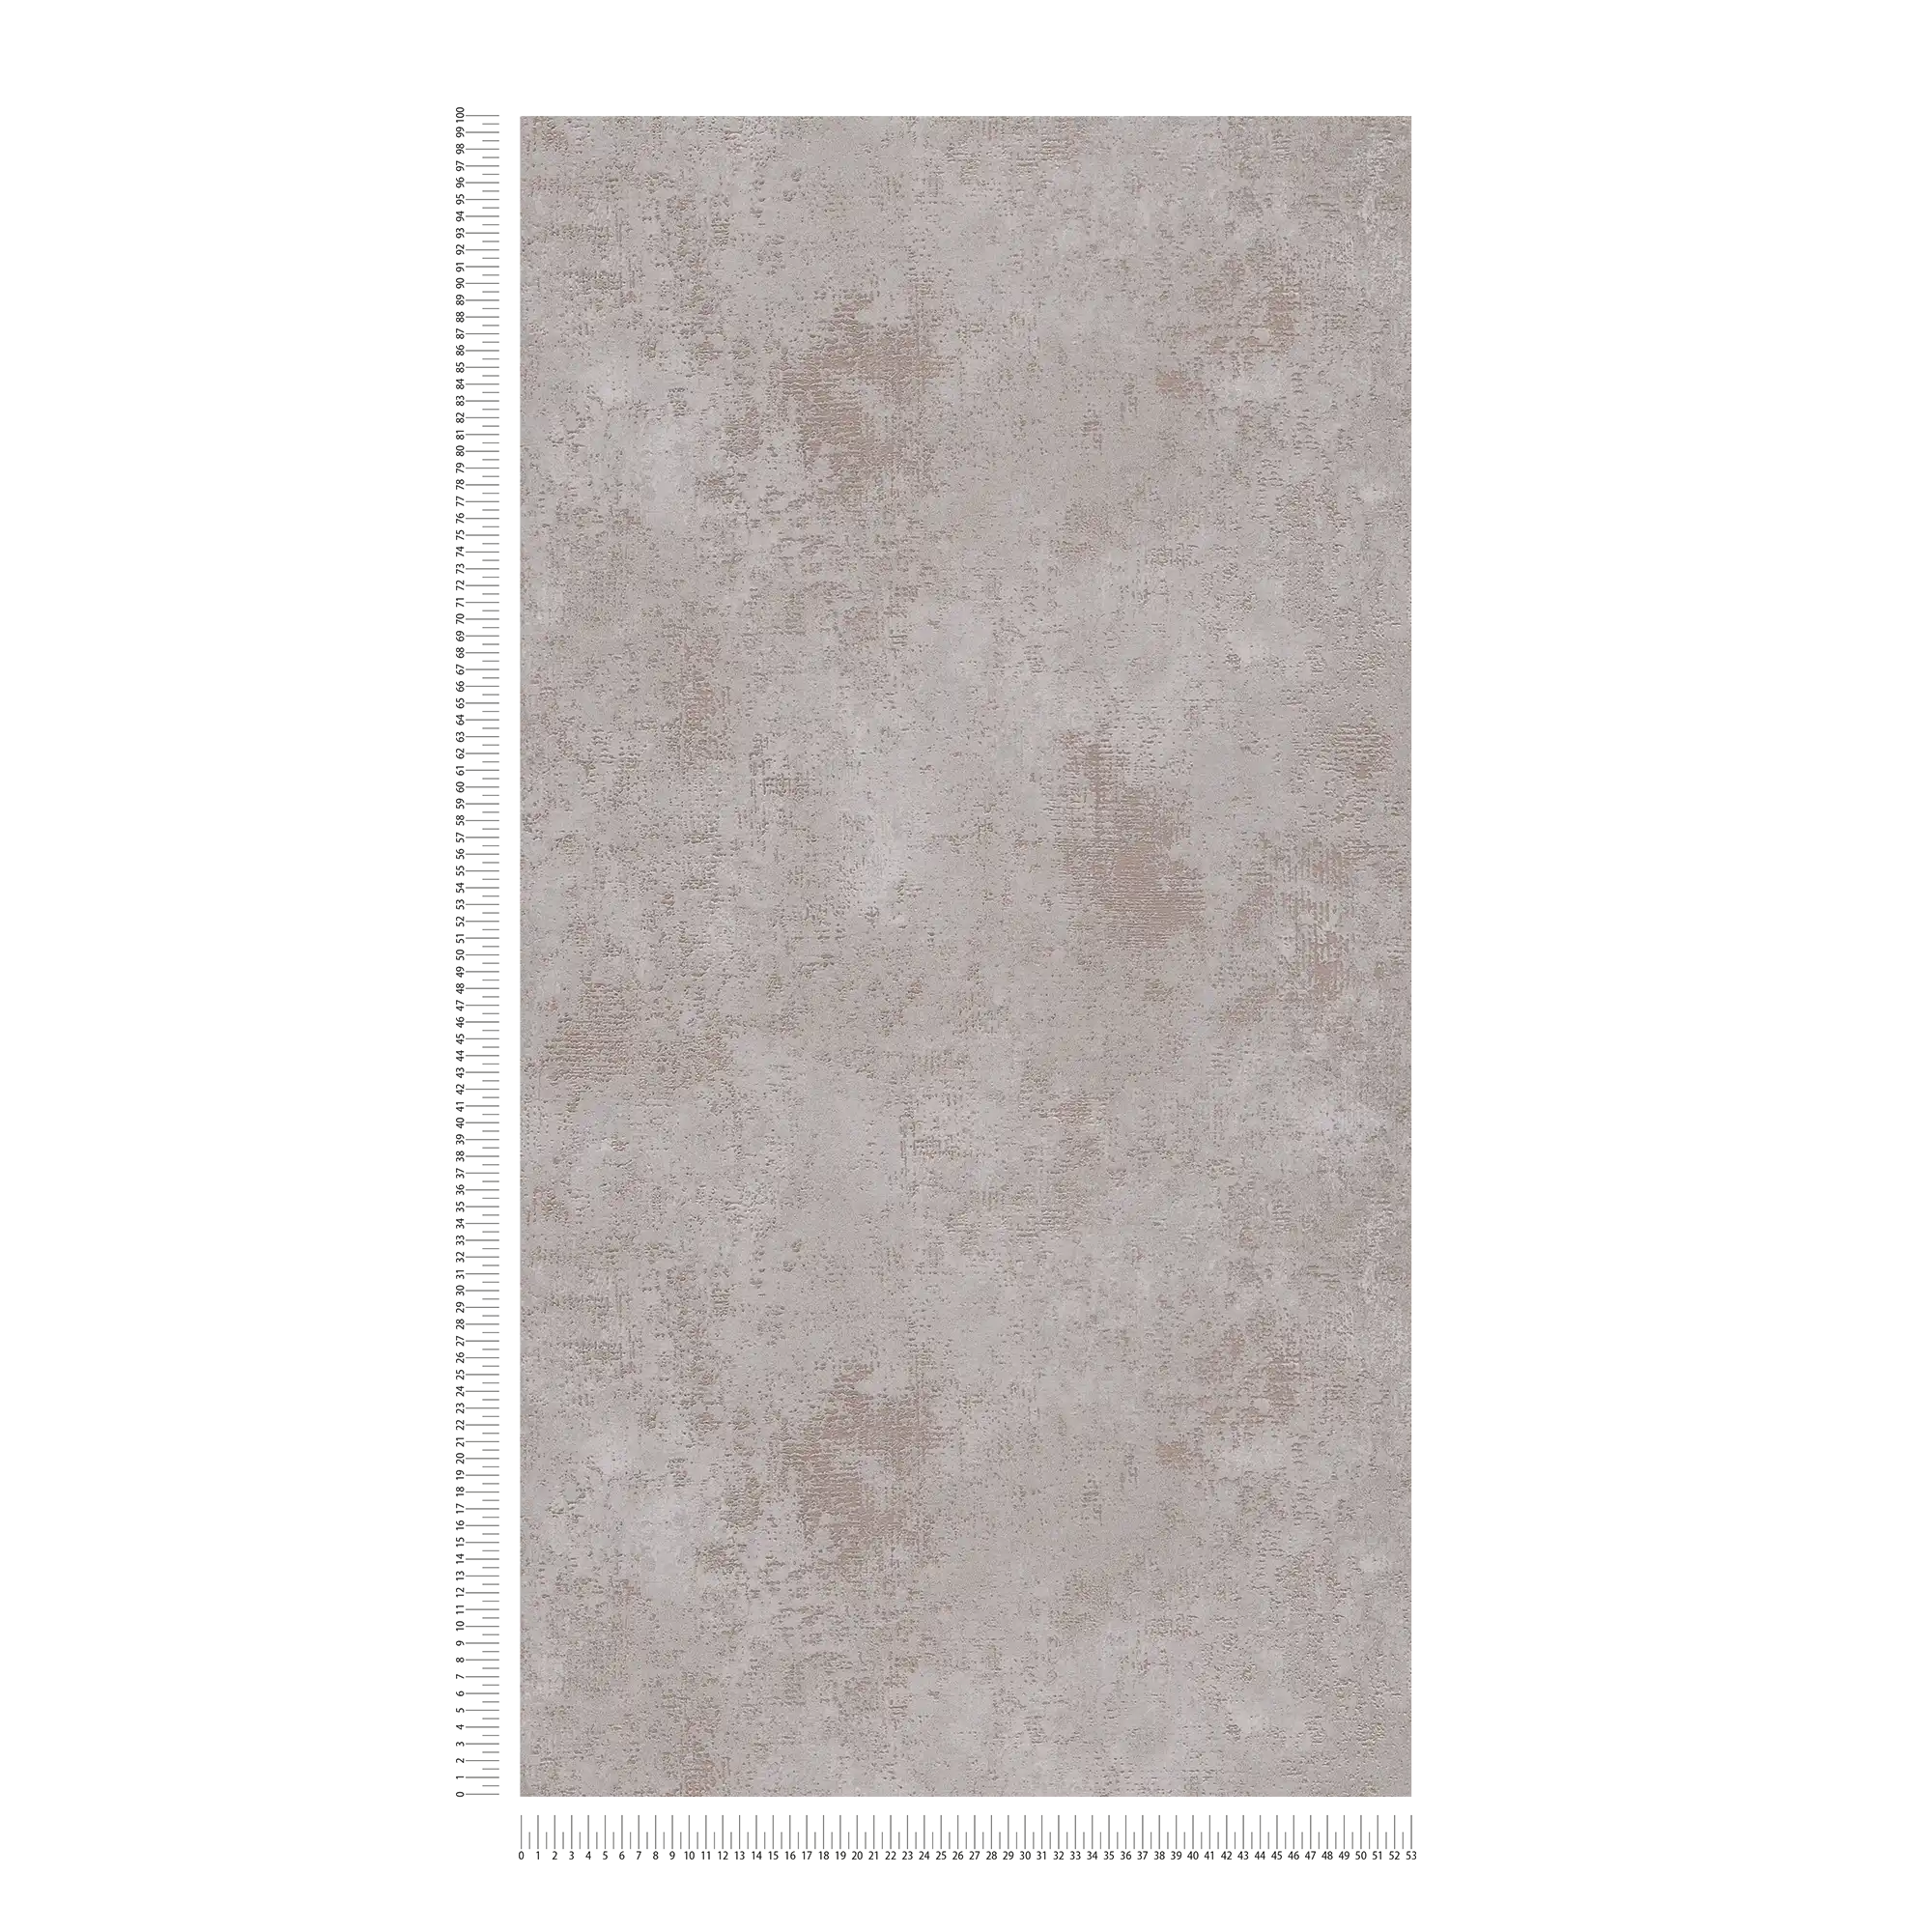             Papier peint intissé gris avec effet texturé métallique
        